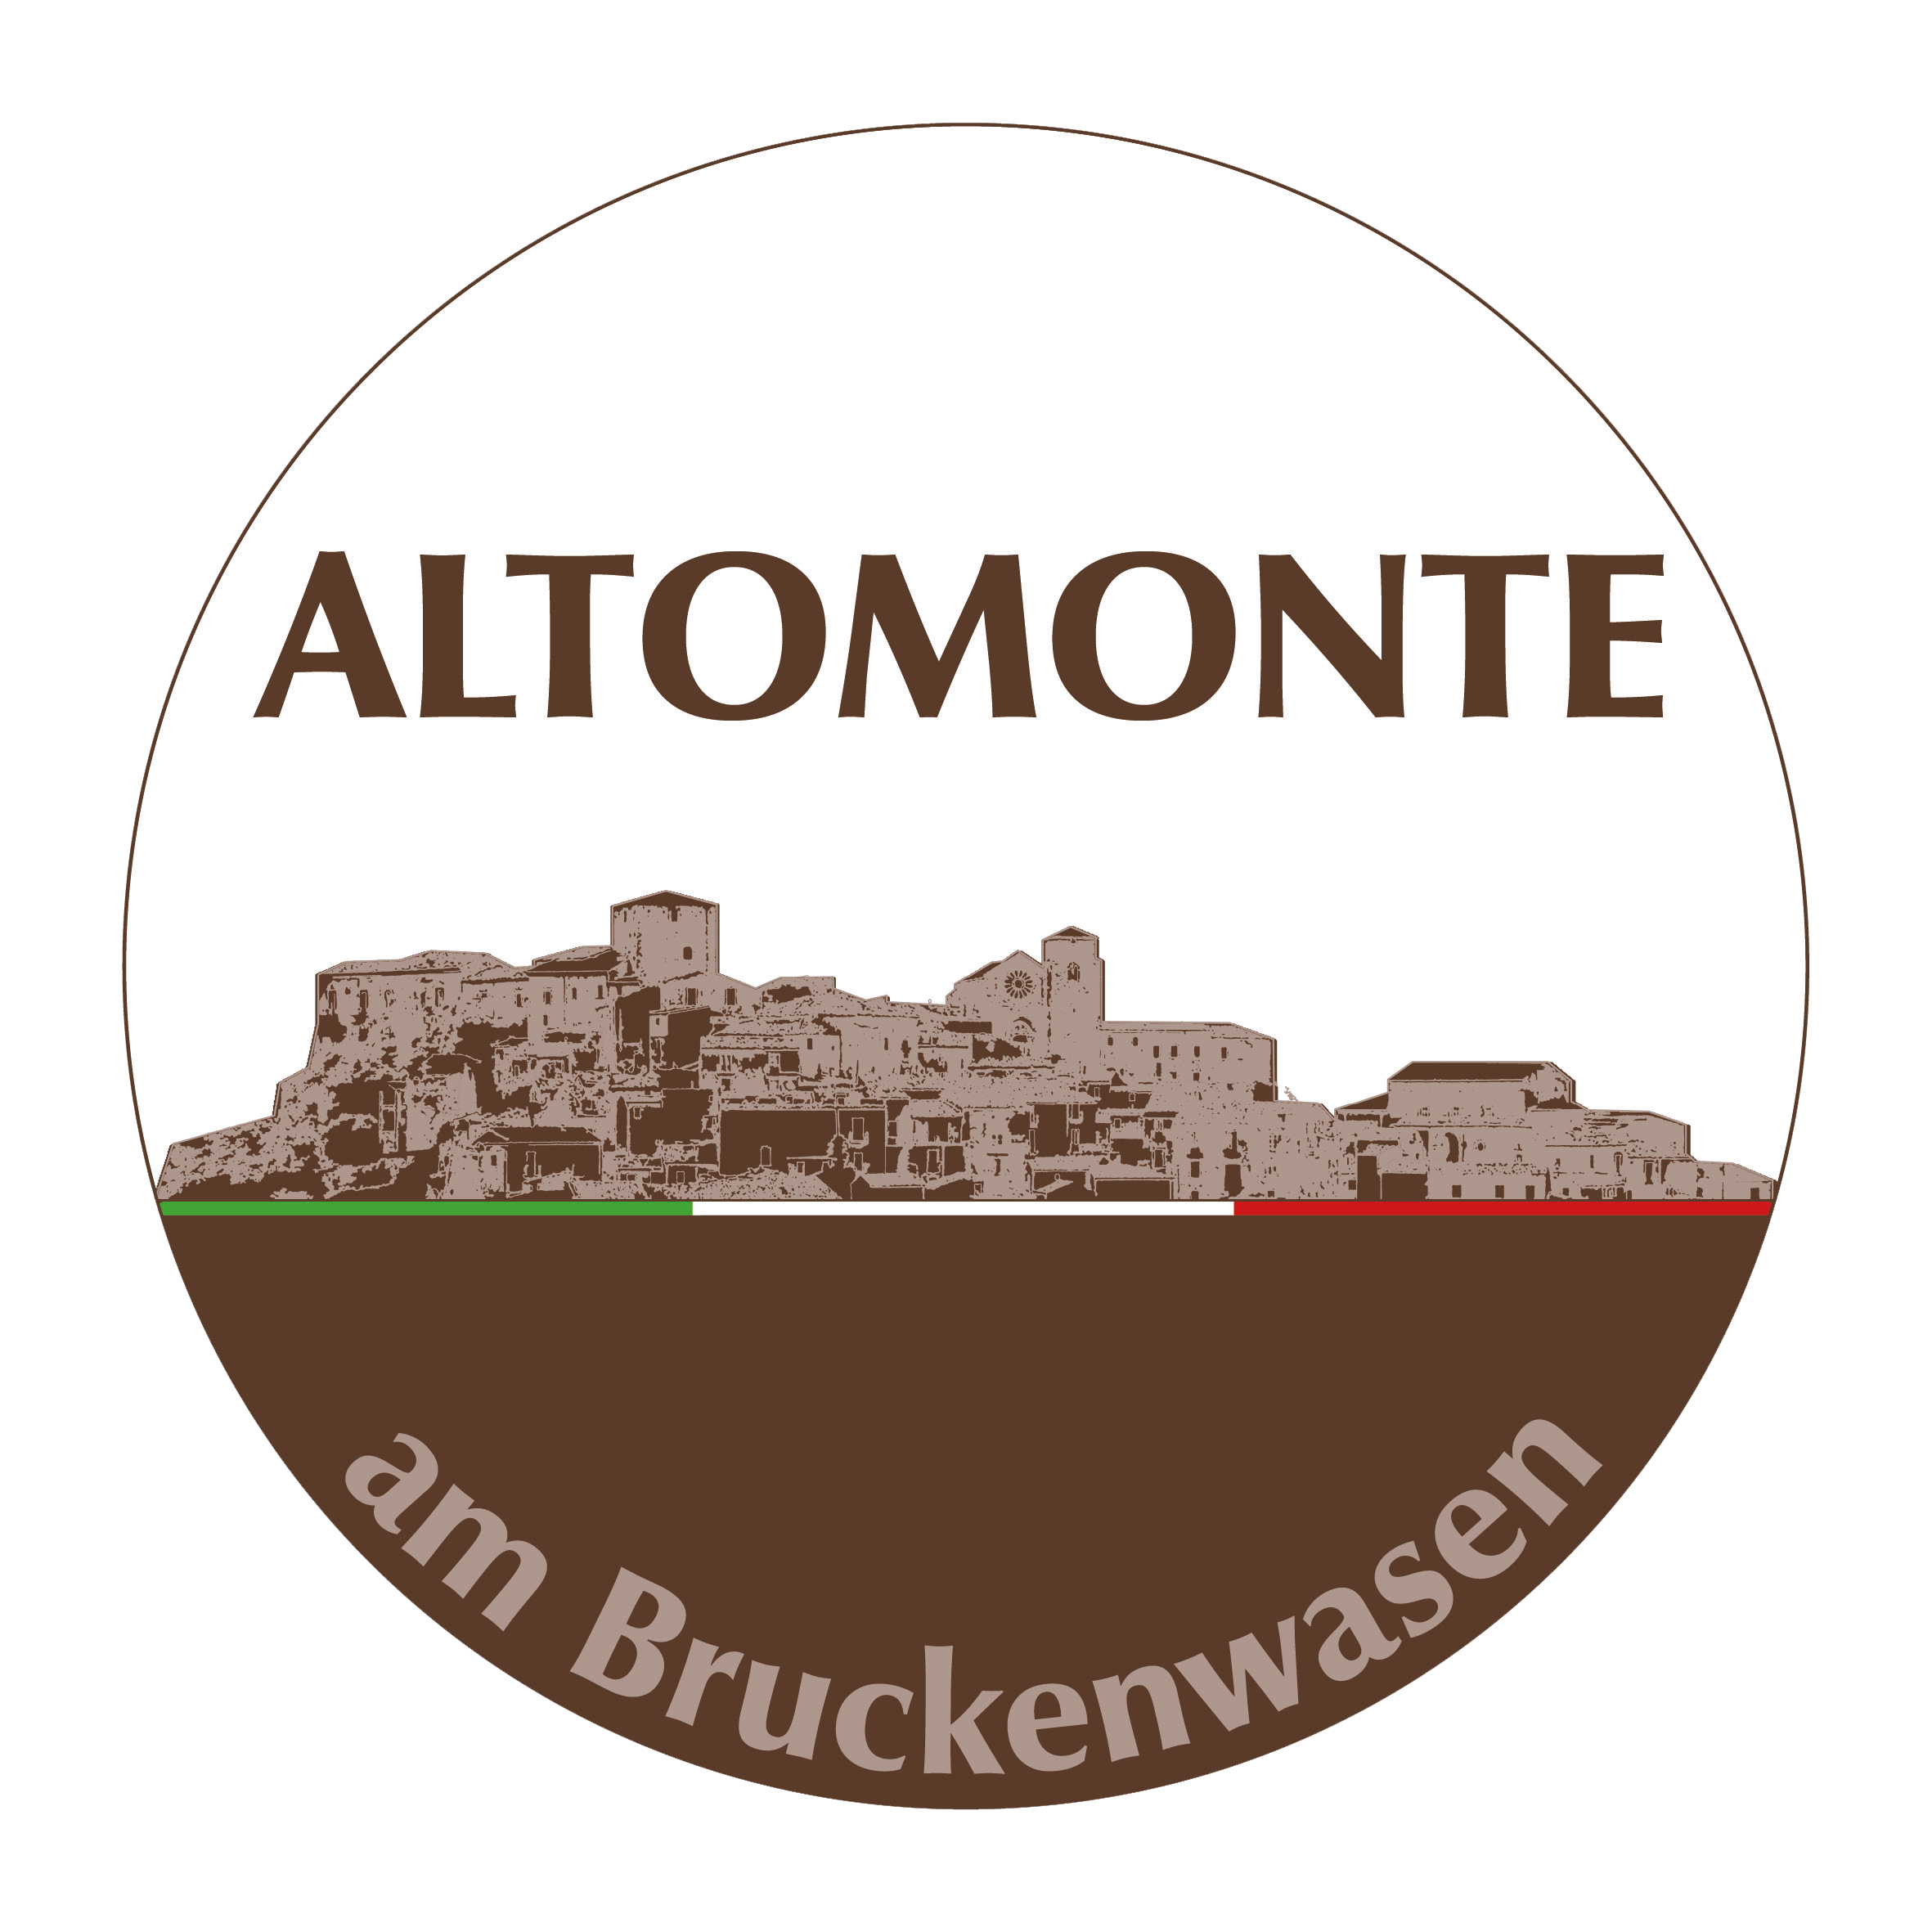 Altomonte am Bruckenwasen